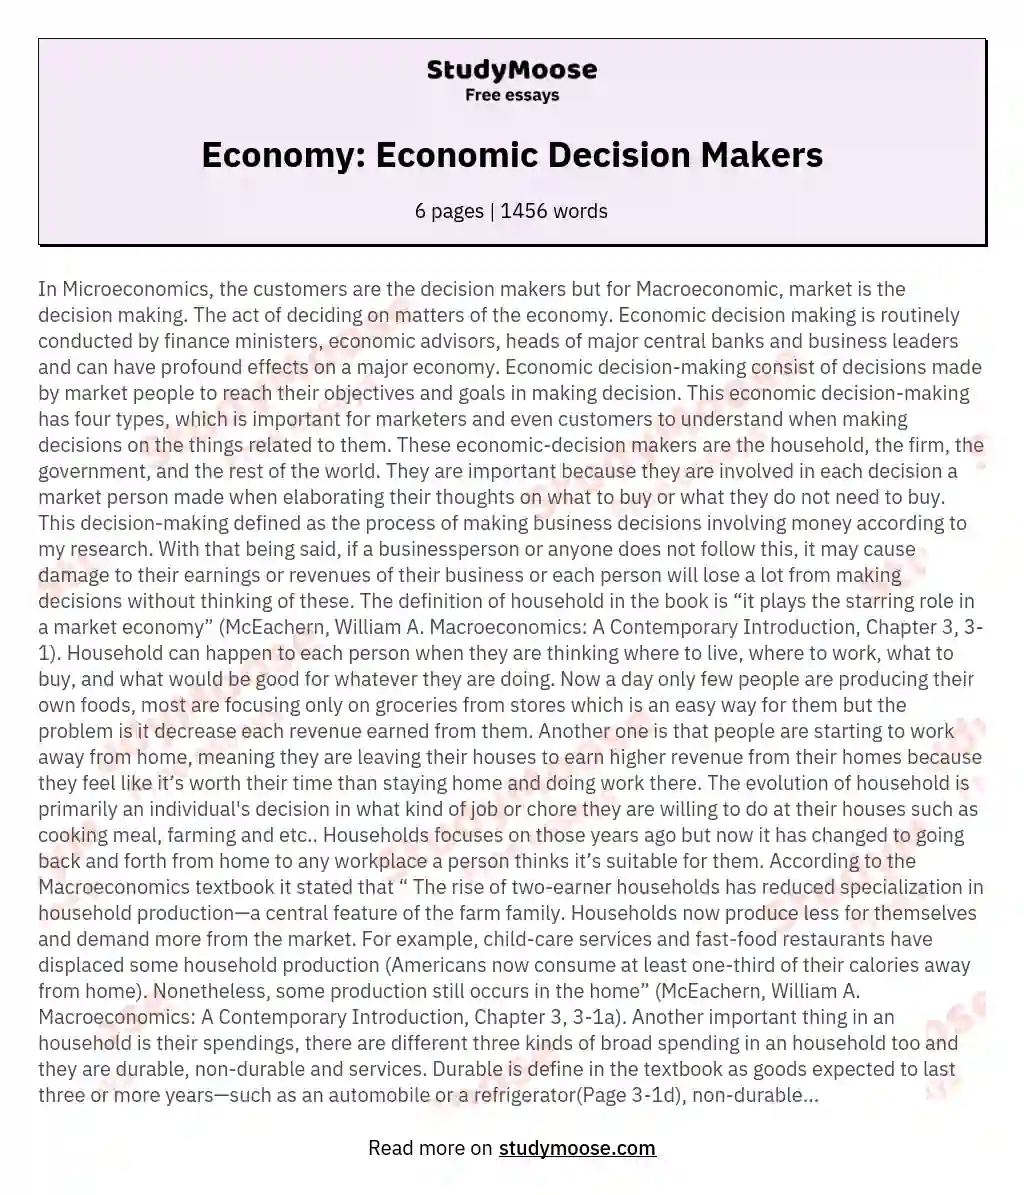 Economy: Economic Decision Makers essay